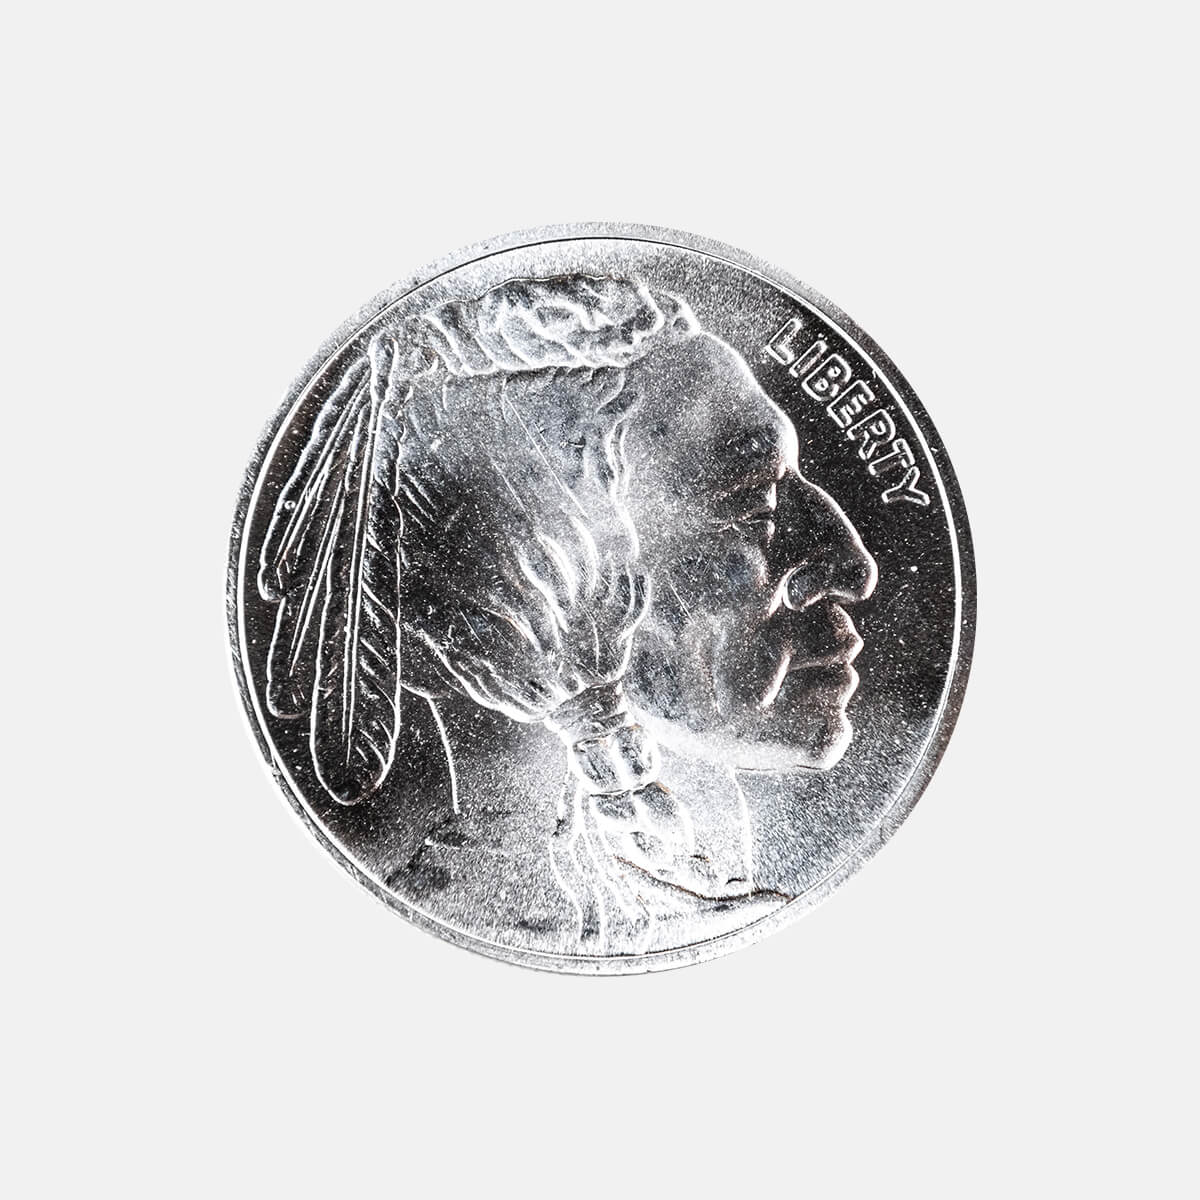 1oz. Silver Coin